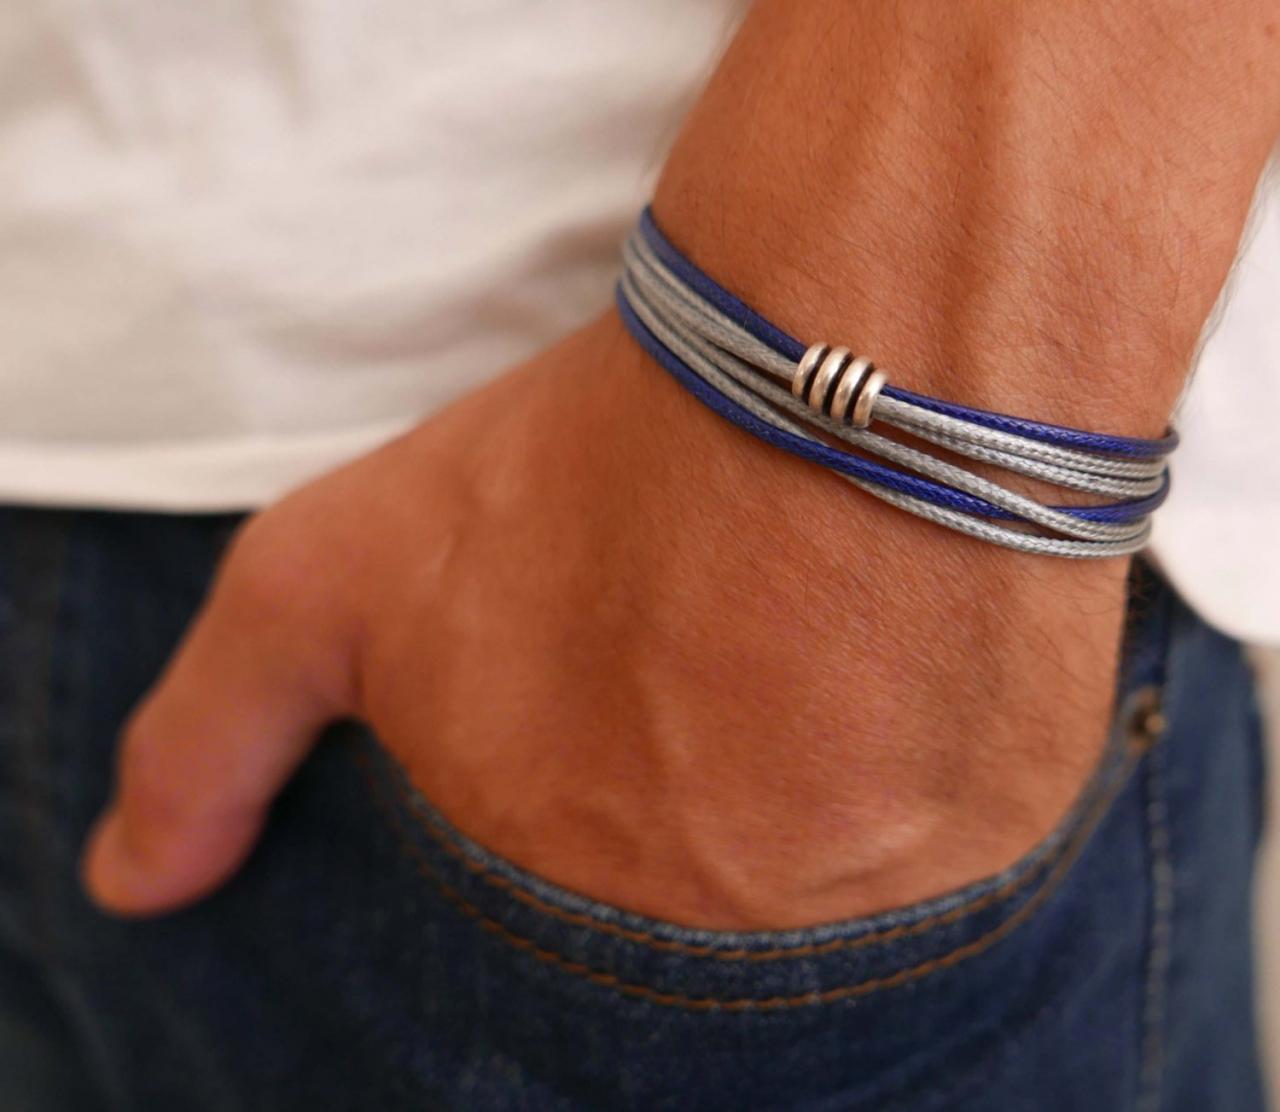 Men's Bracelet - Men's Vegan Bracelet - Men's Jewelry - Men's Gift - Boyfrienf Gift - Husband Gift - Gift For